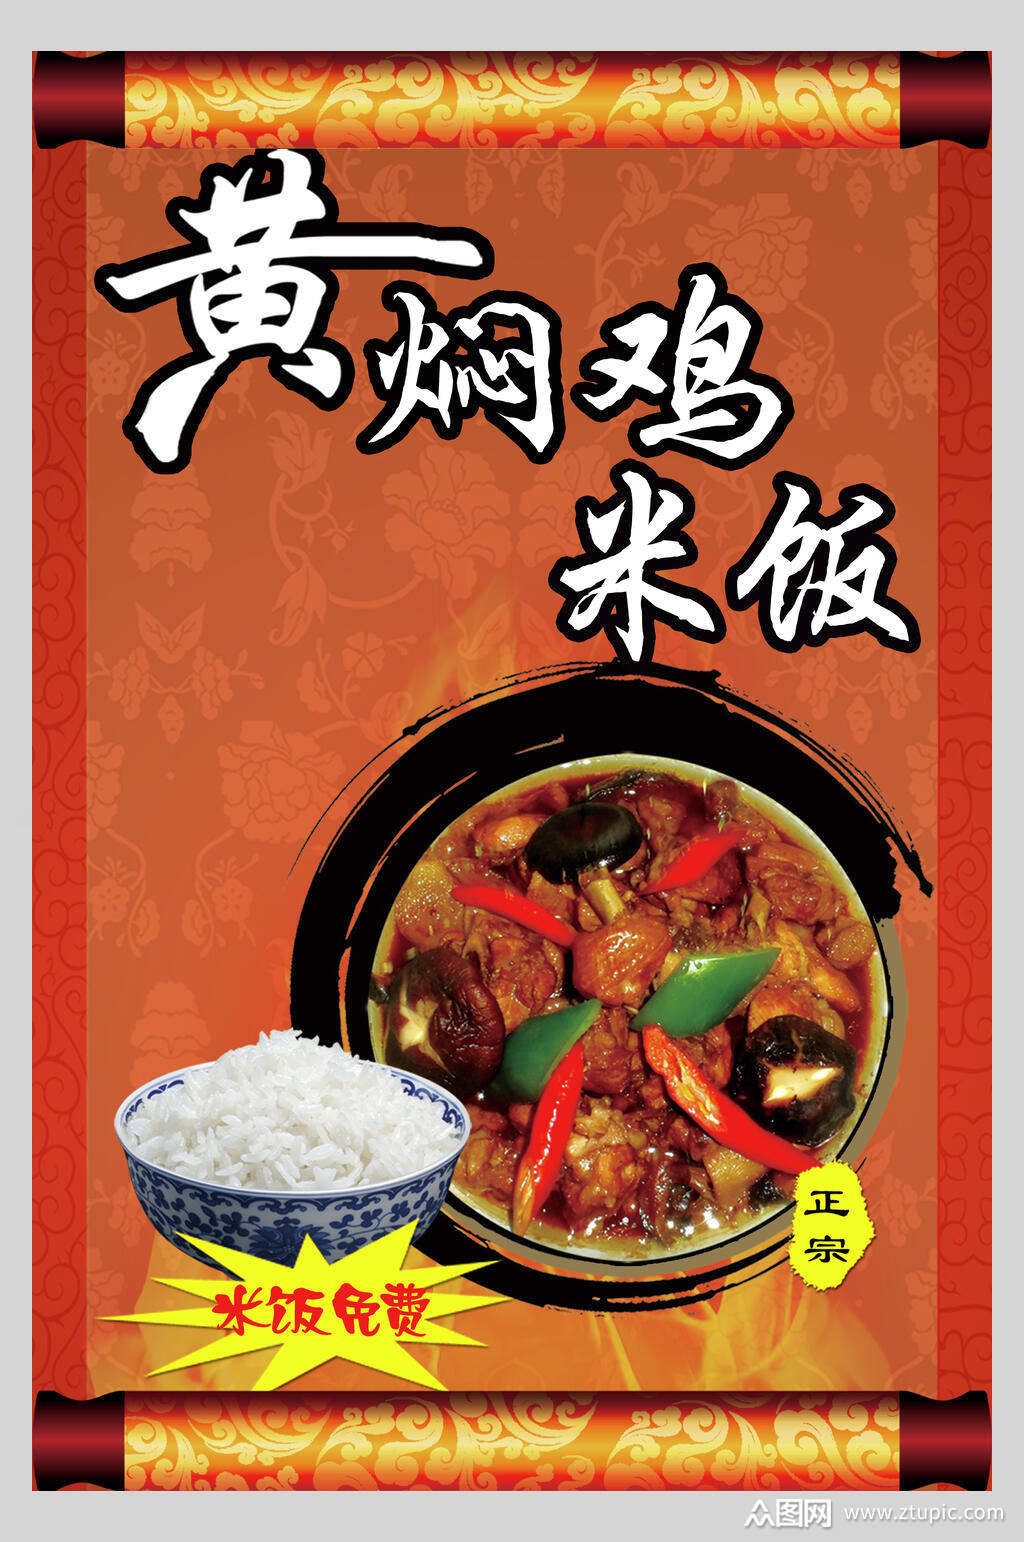 黄焖鸡米饭海报素材免费下载,本作品是由你好上传的原创平面广告素材